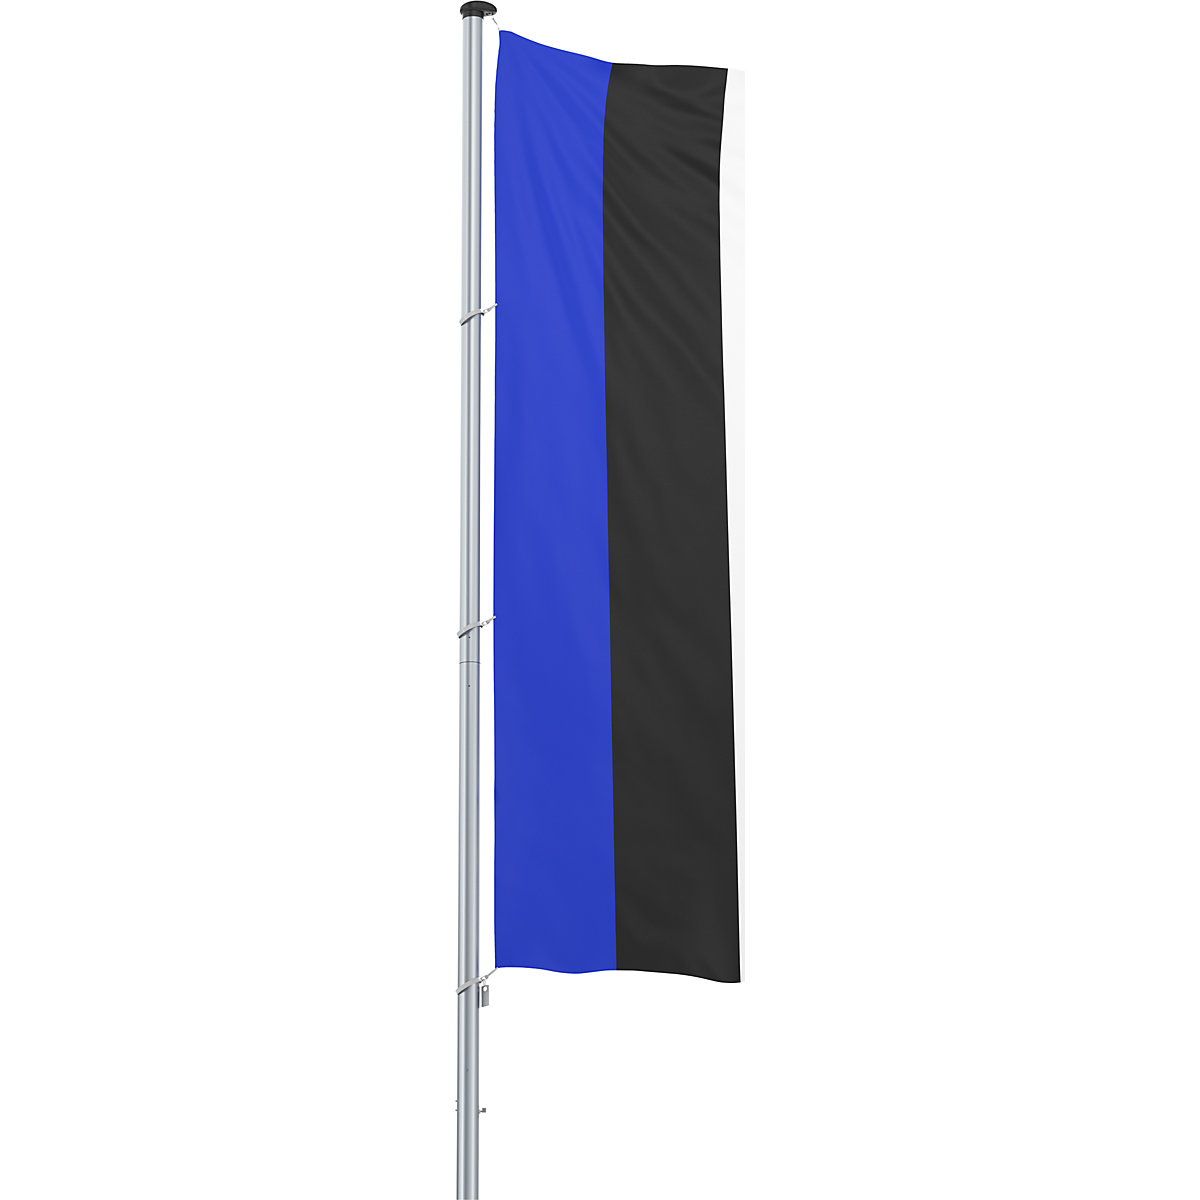 Mannus – Bandera para izar/bandera del país, formato 1,2 x 3 m, Estonia